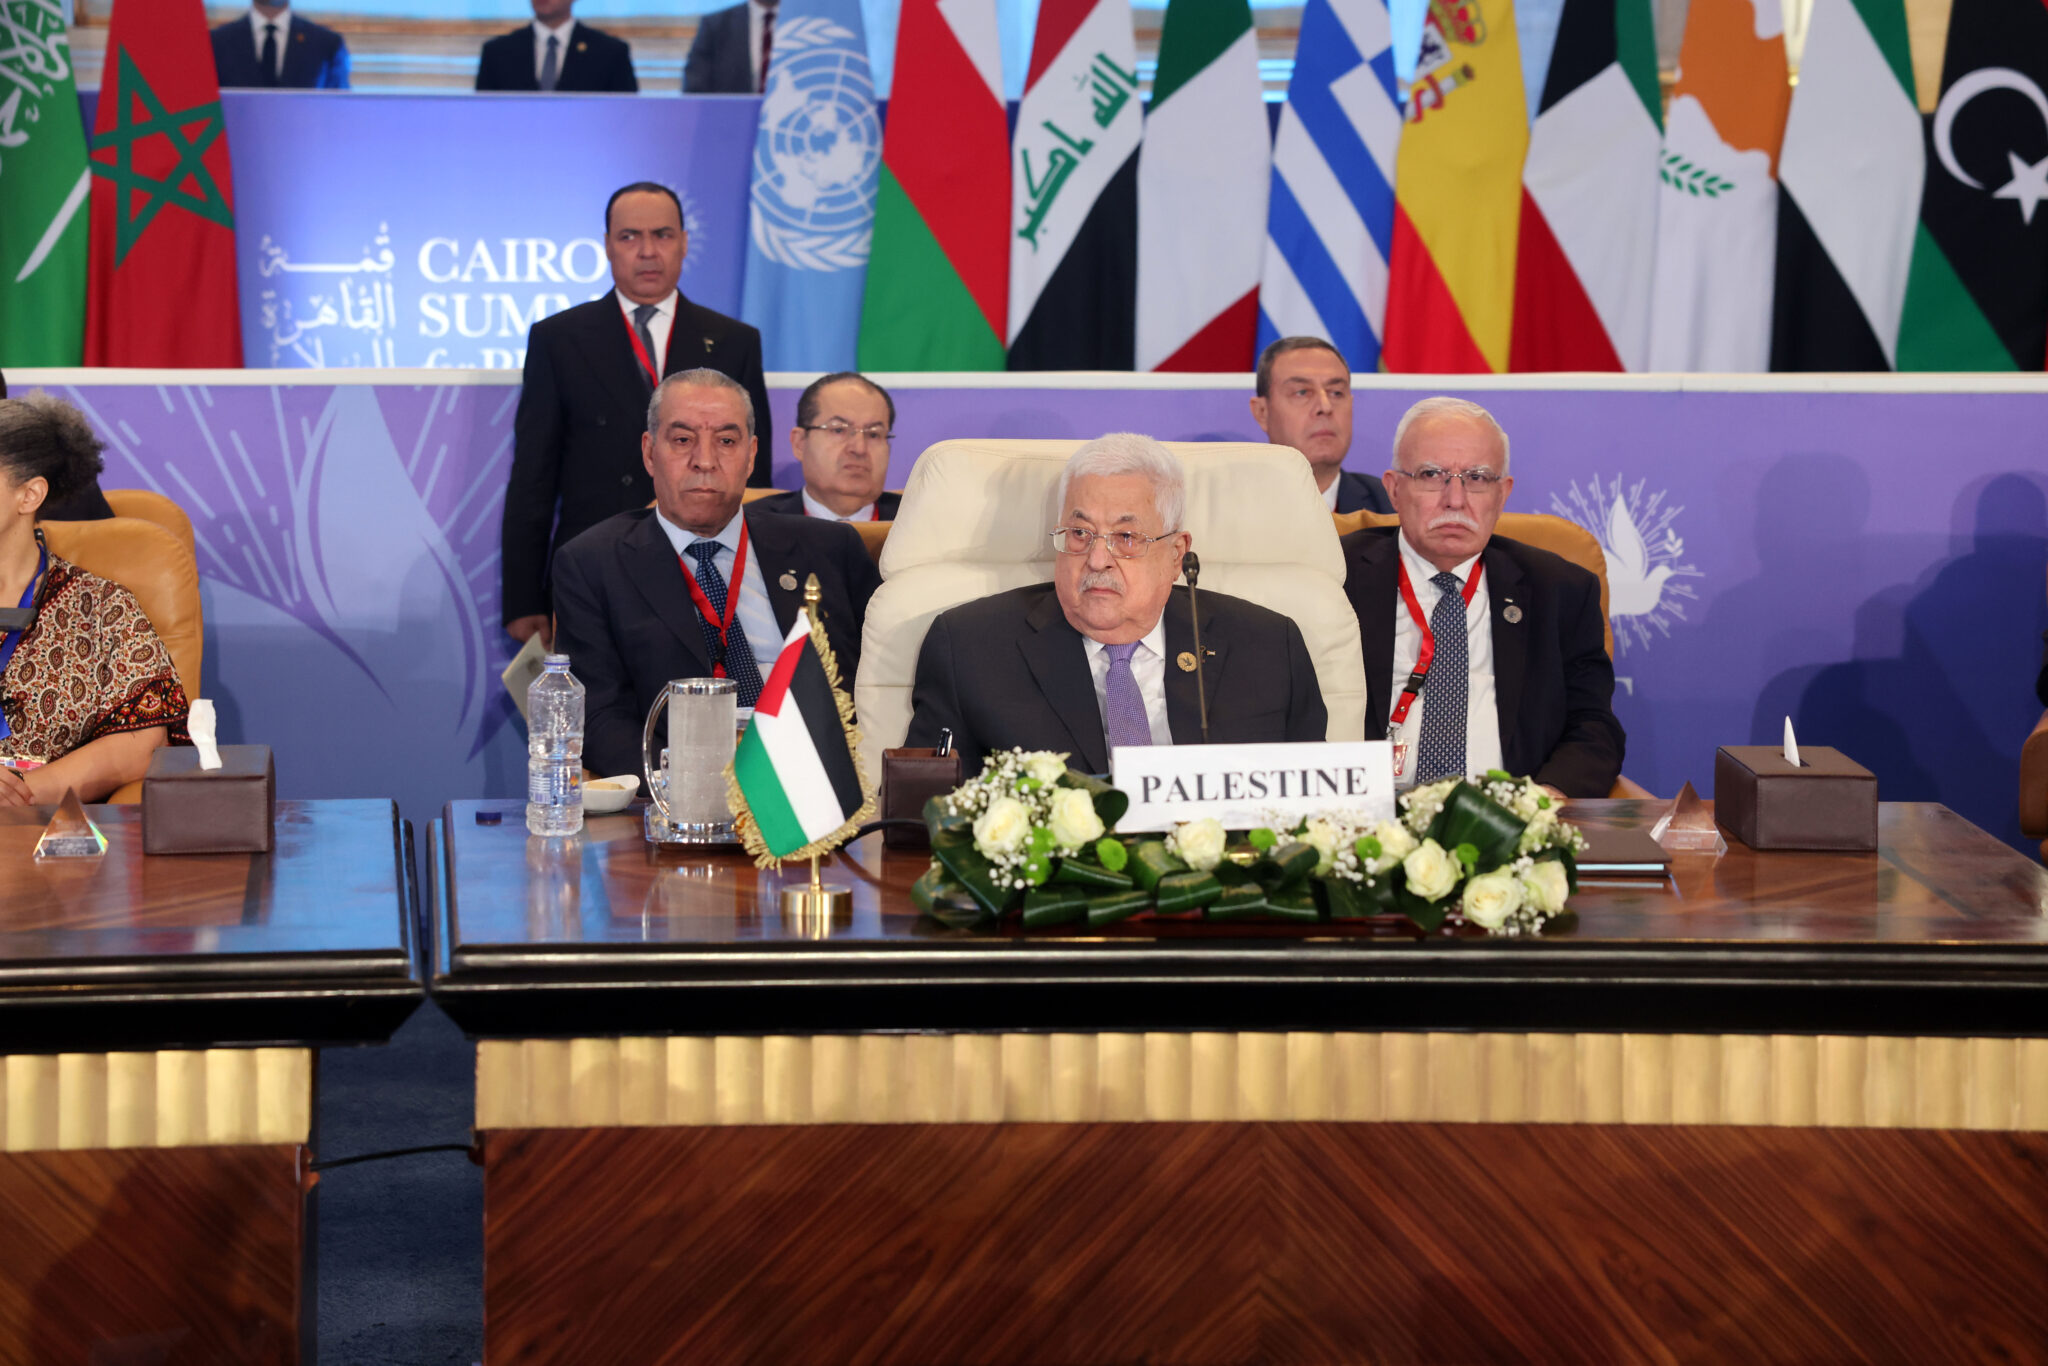 Палестинская делегация  во главе с президентом Махмудом Аббасом на форуме в Каире 21 октября 2023 года. Фото Thaer Ganaim / APA Images via ZUMA Press Wire / Scanpix / LETA.